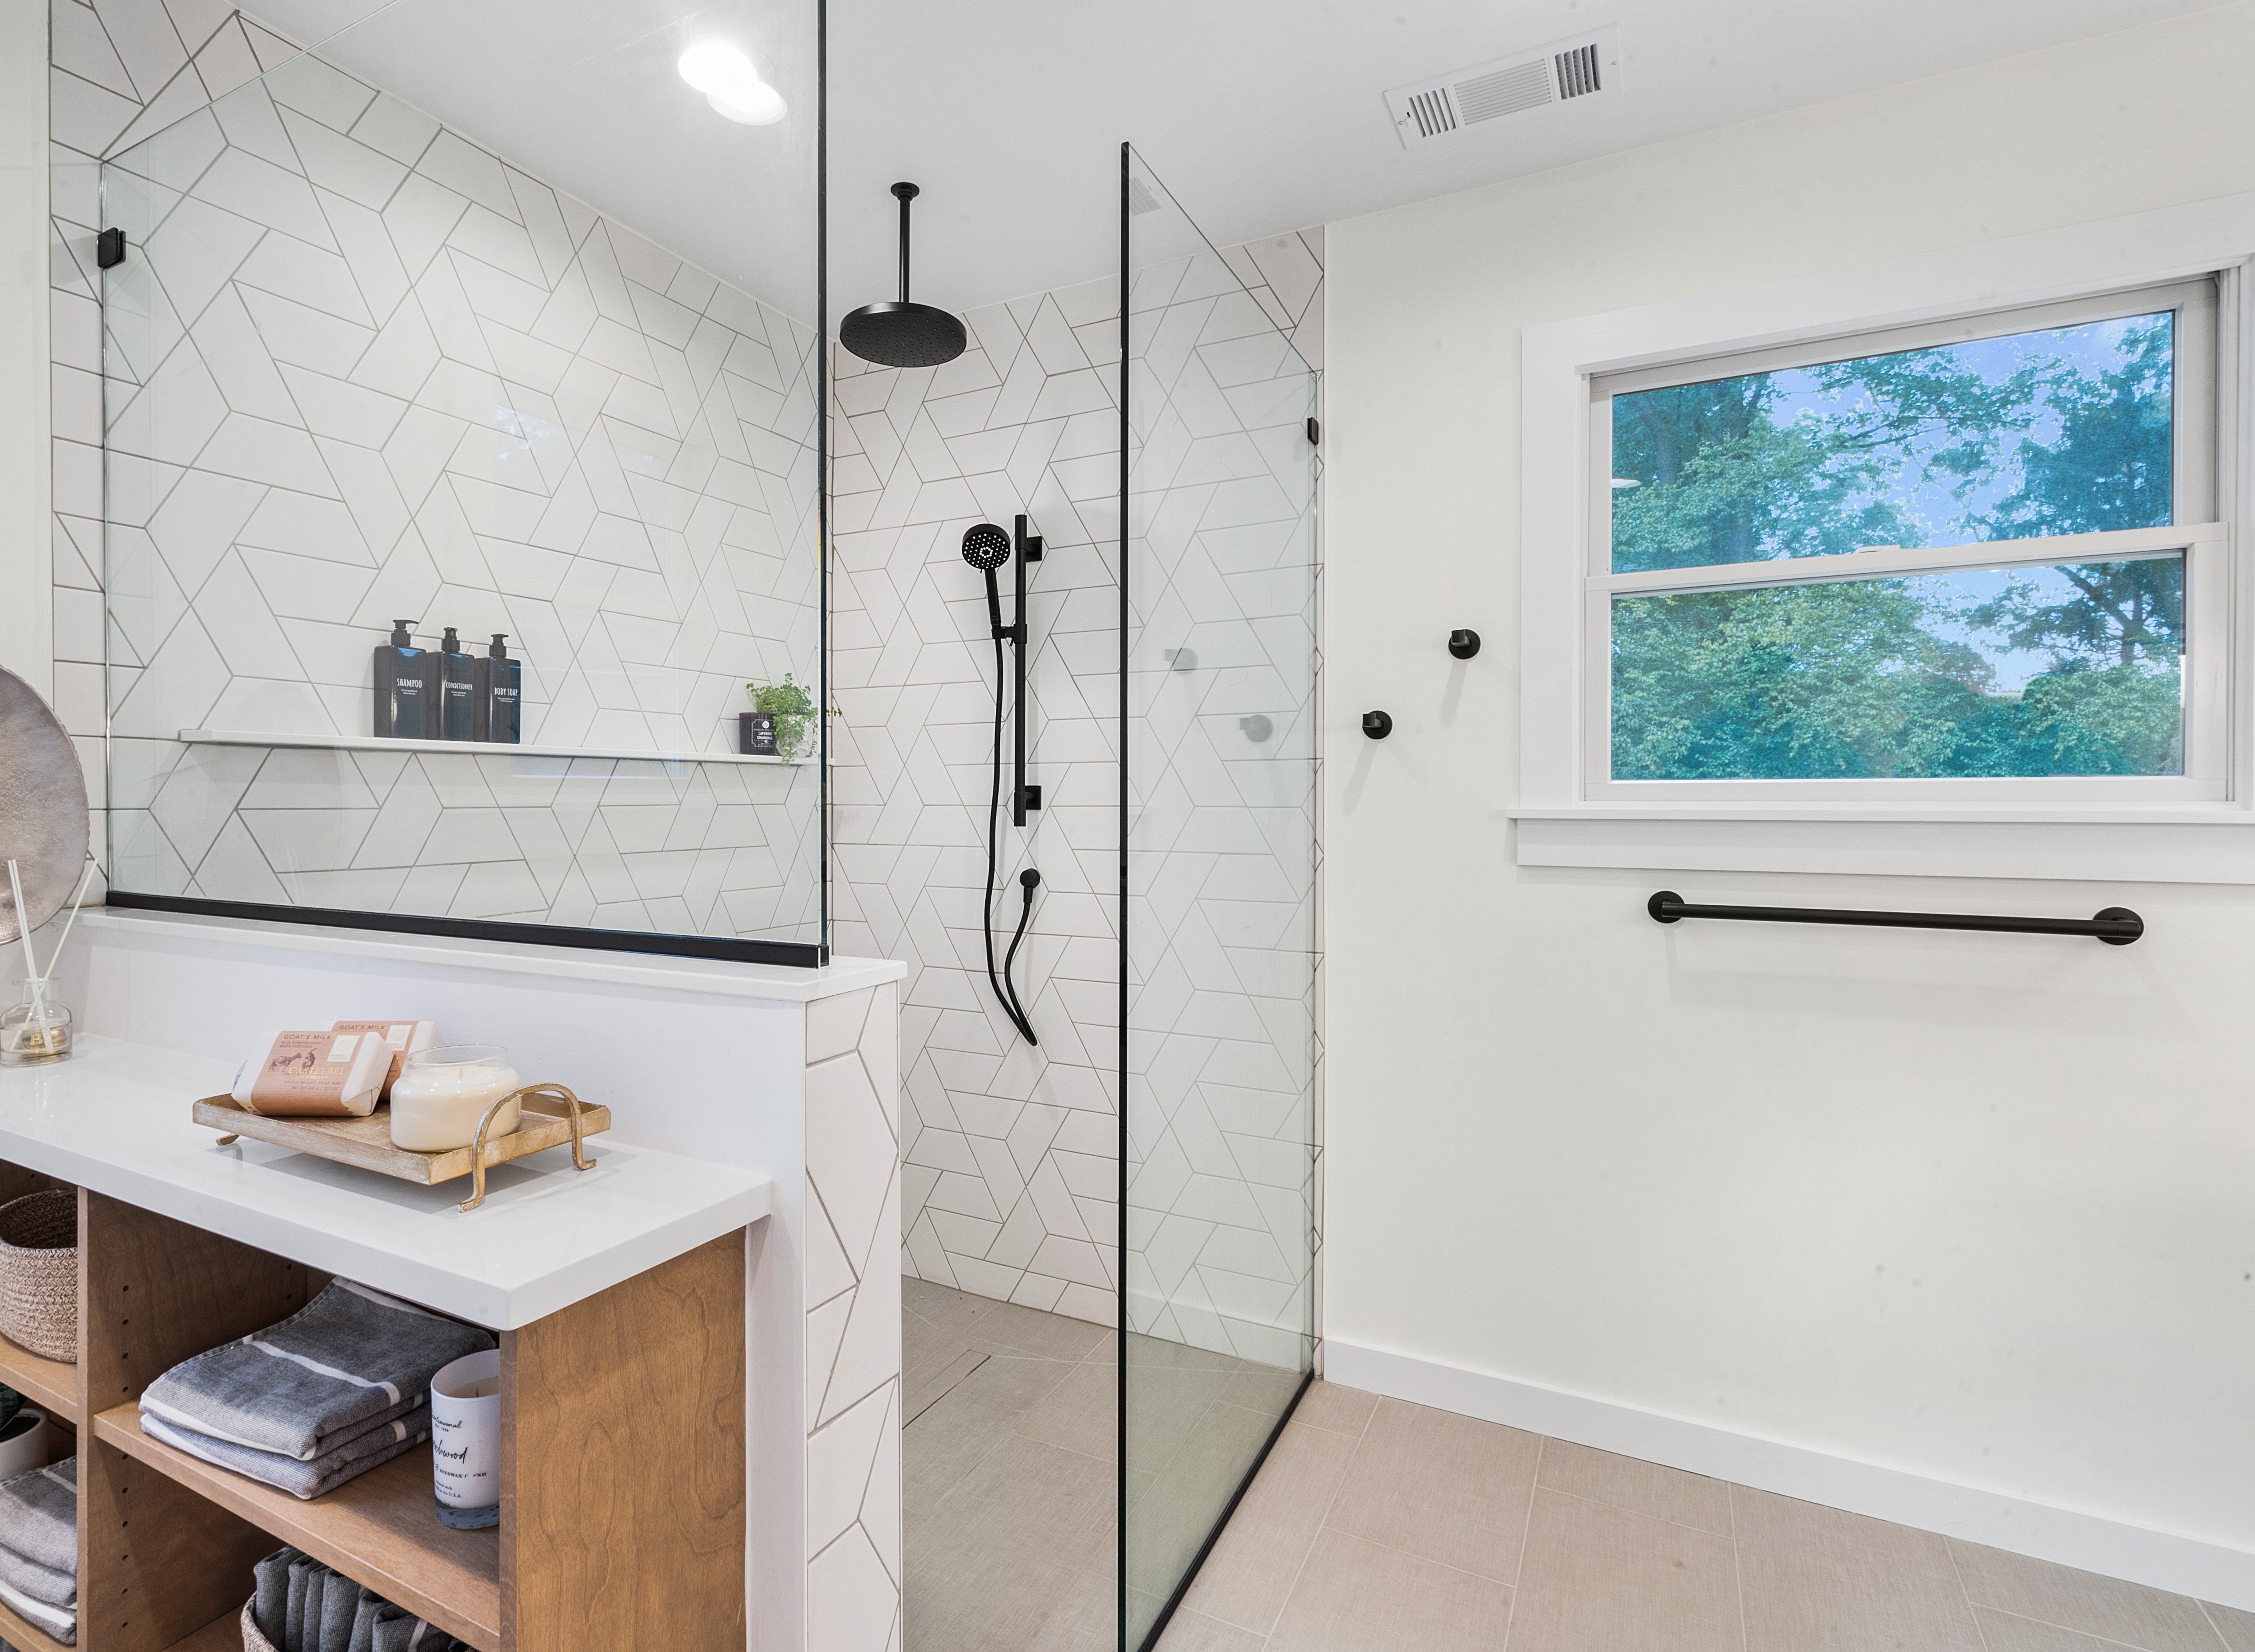 Denville, NJ  Bathroom remodel with floating vanity, large roll in shower, white tile design 